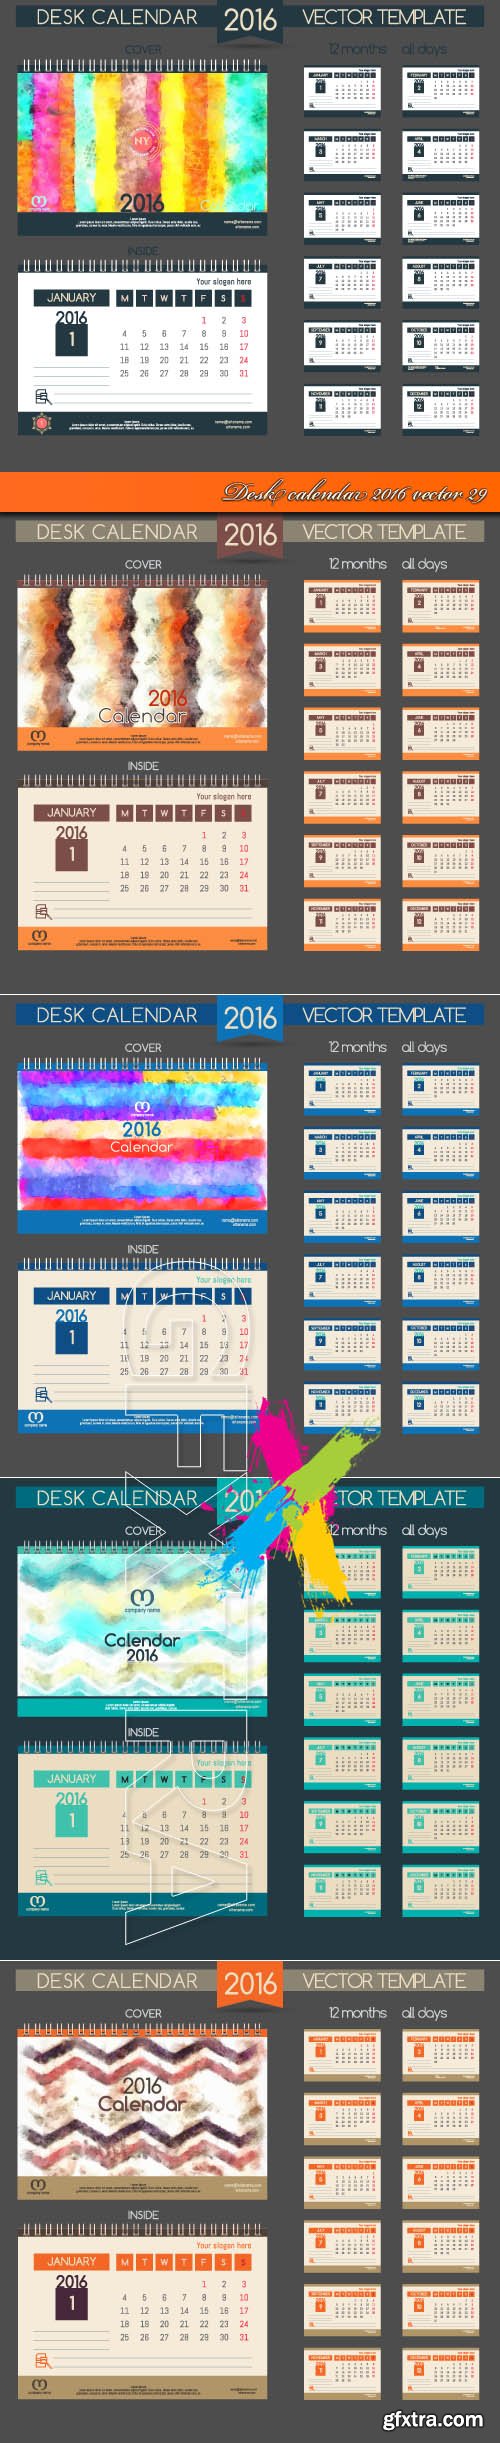 Desk calendar 2016 vector 29